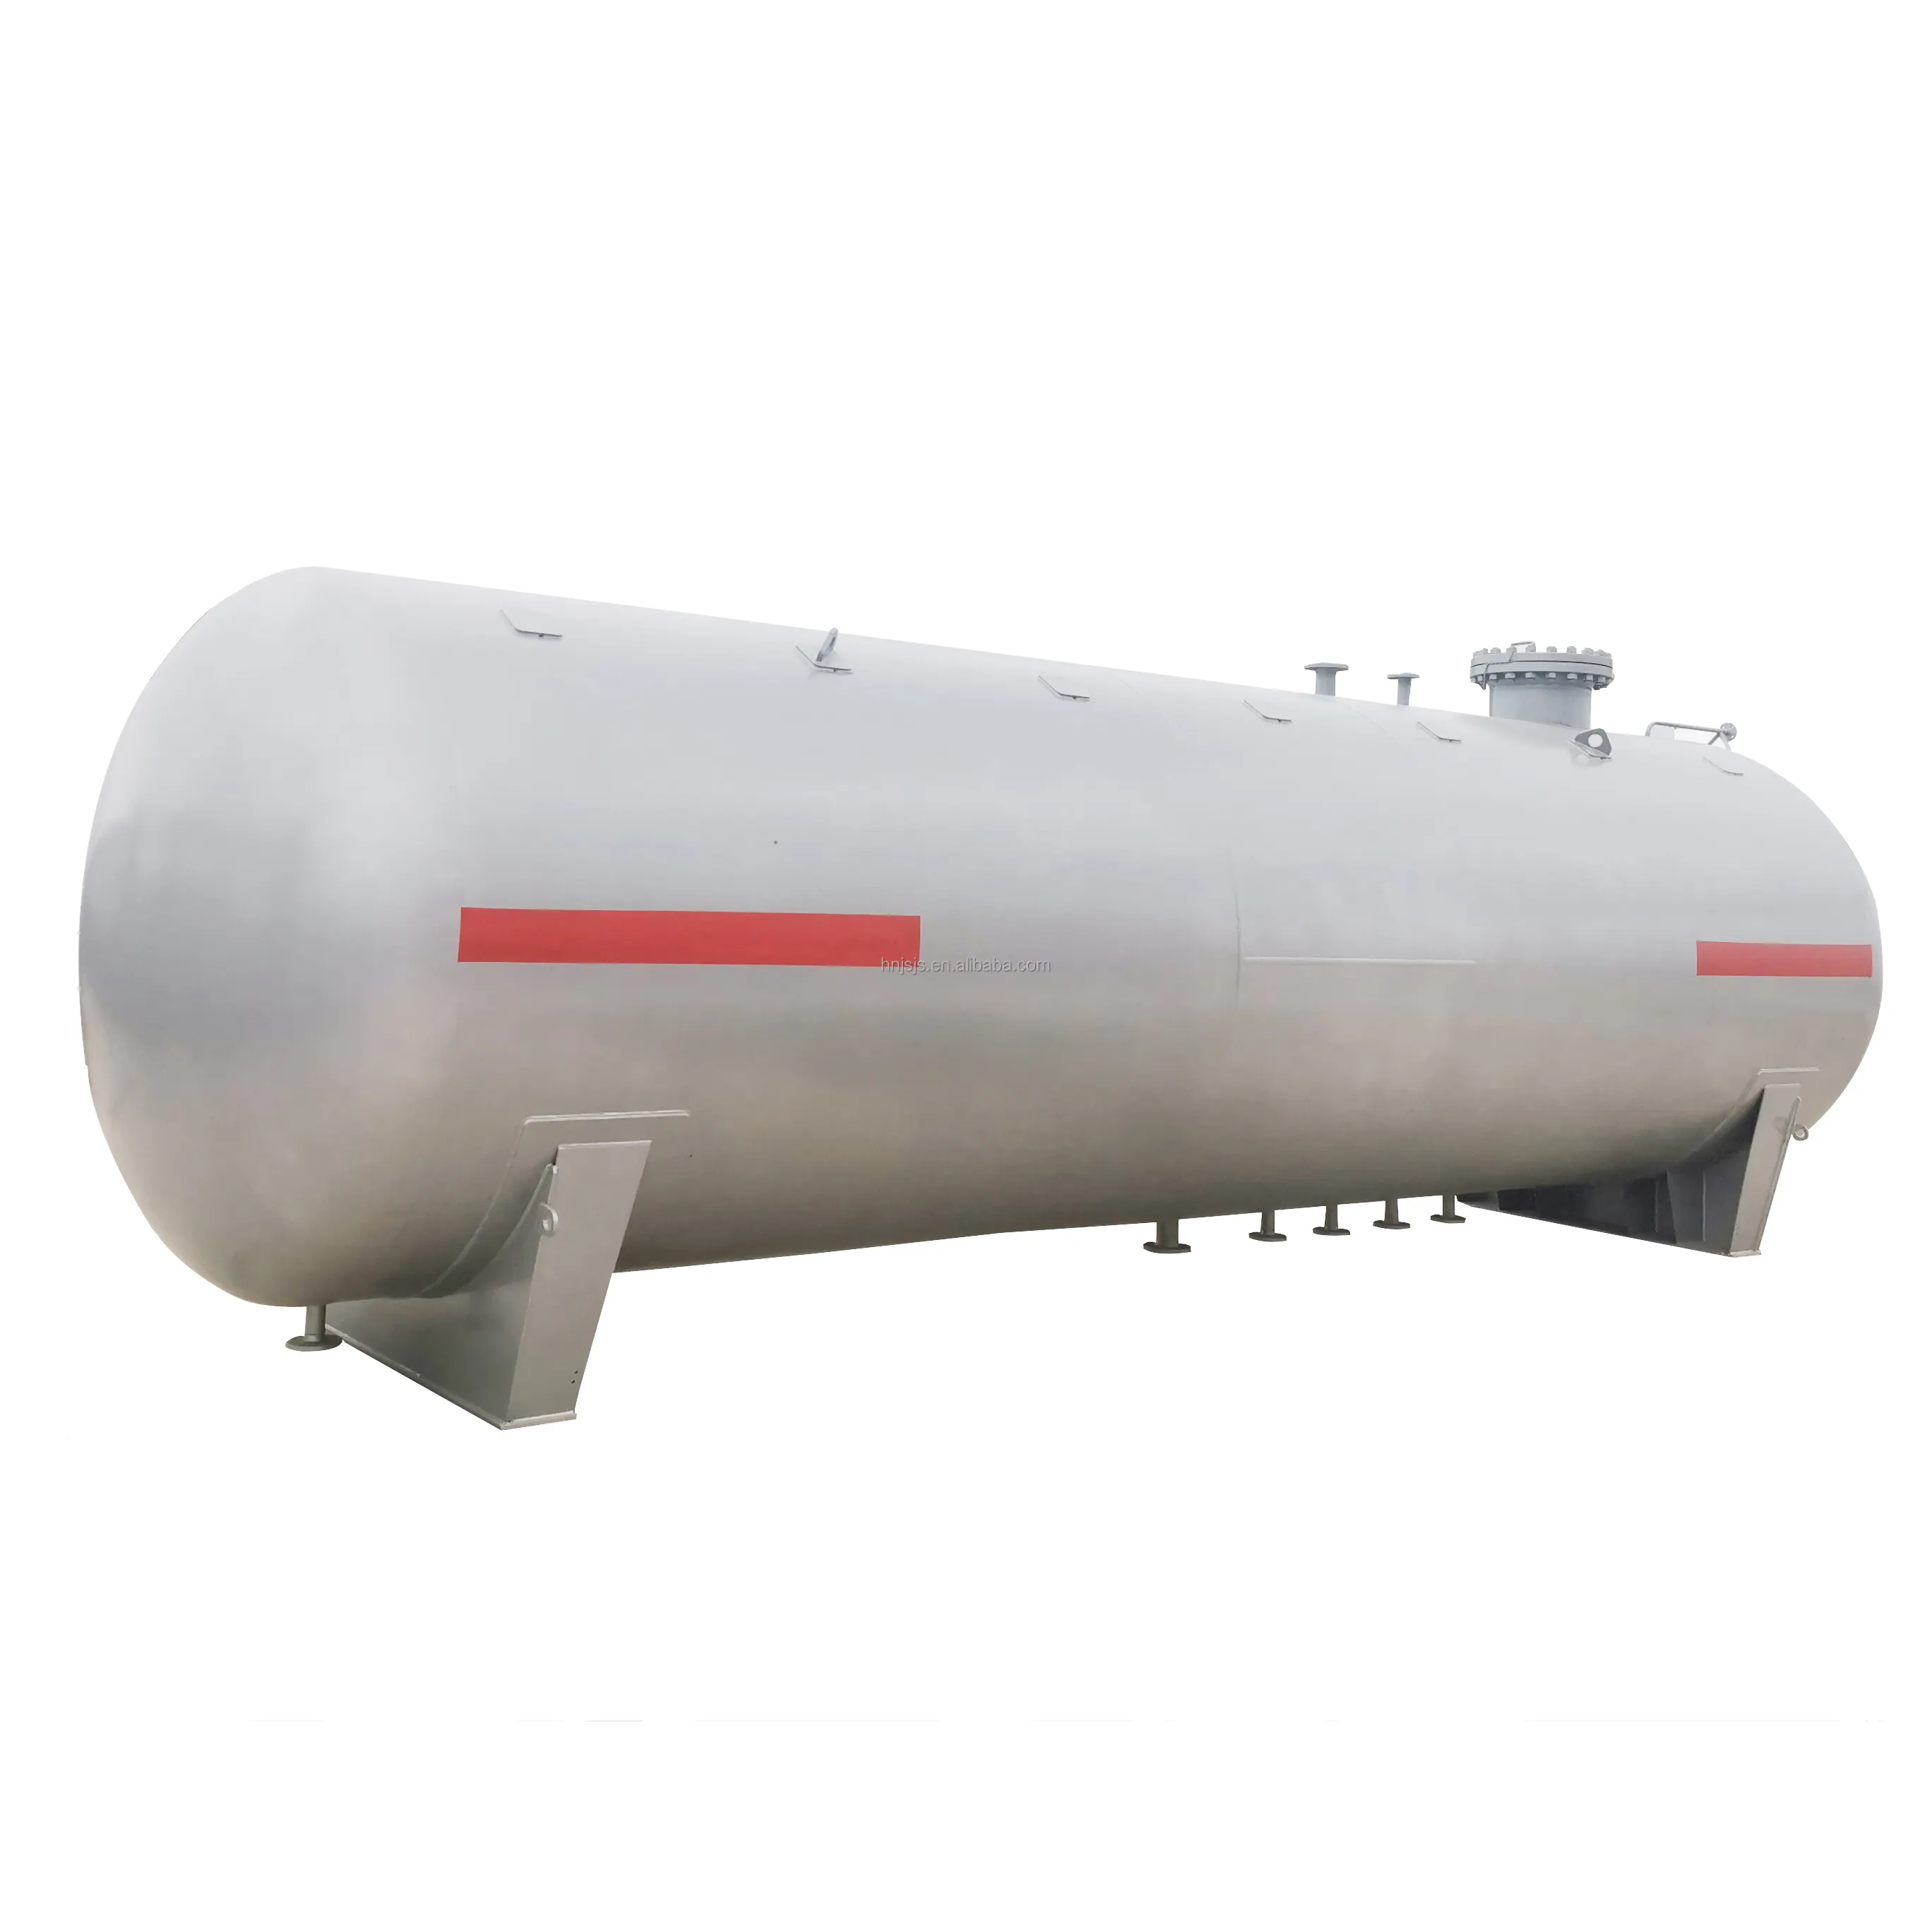 LPG-Lagertanks, die für LPG-Anlagen geeignet sind, können in verschiedenen Größen und Spezifikationen zum Preisvorteil angepasst werden